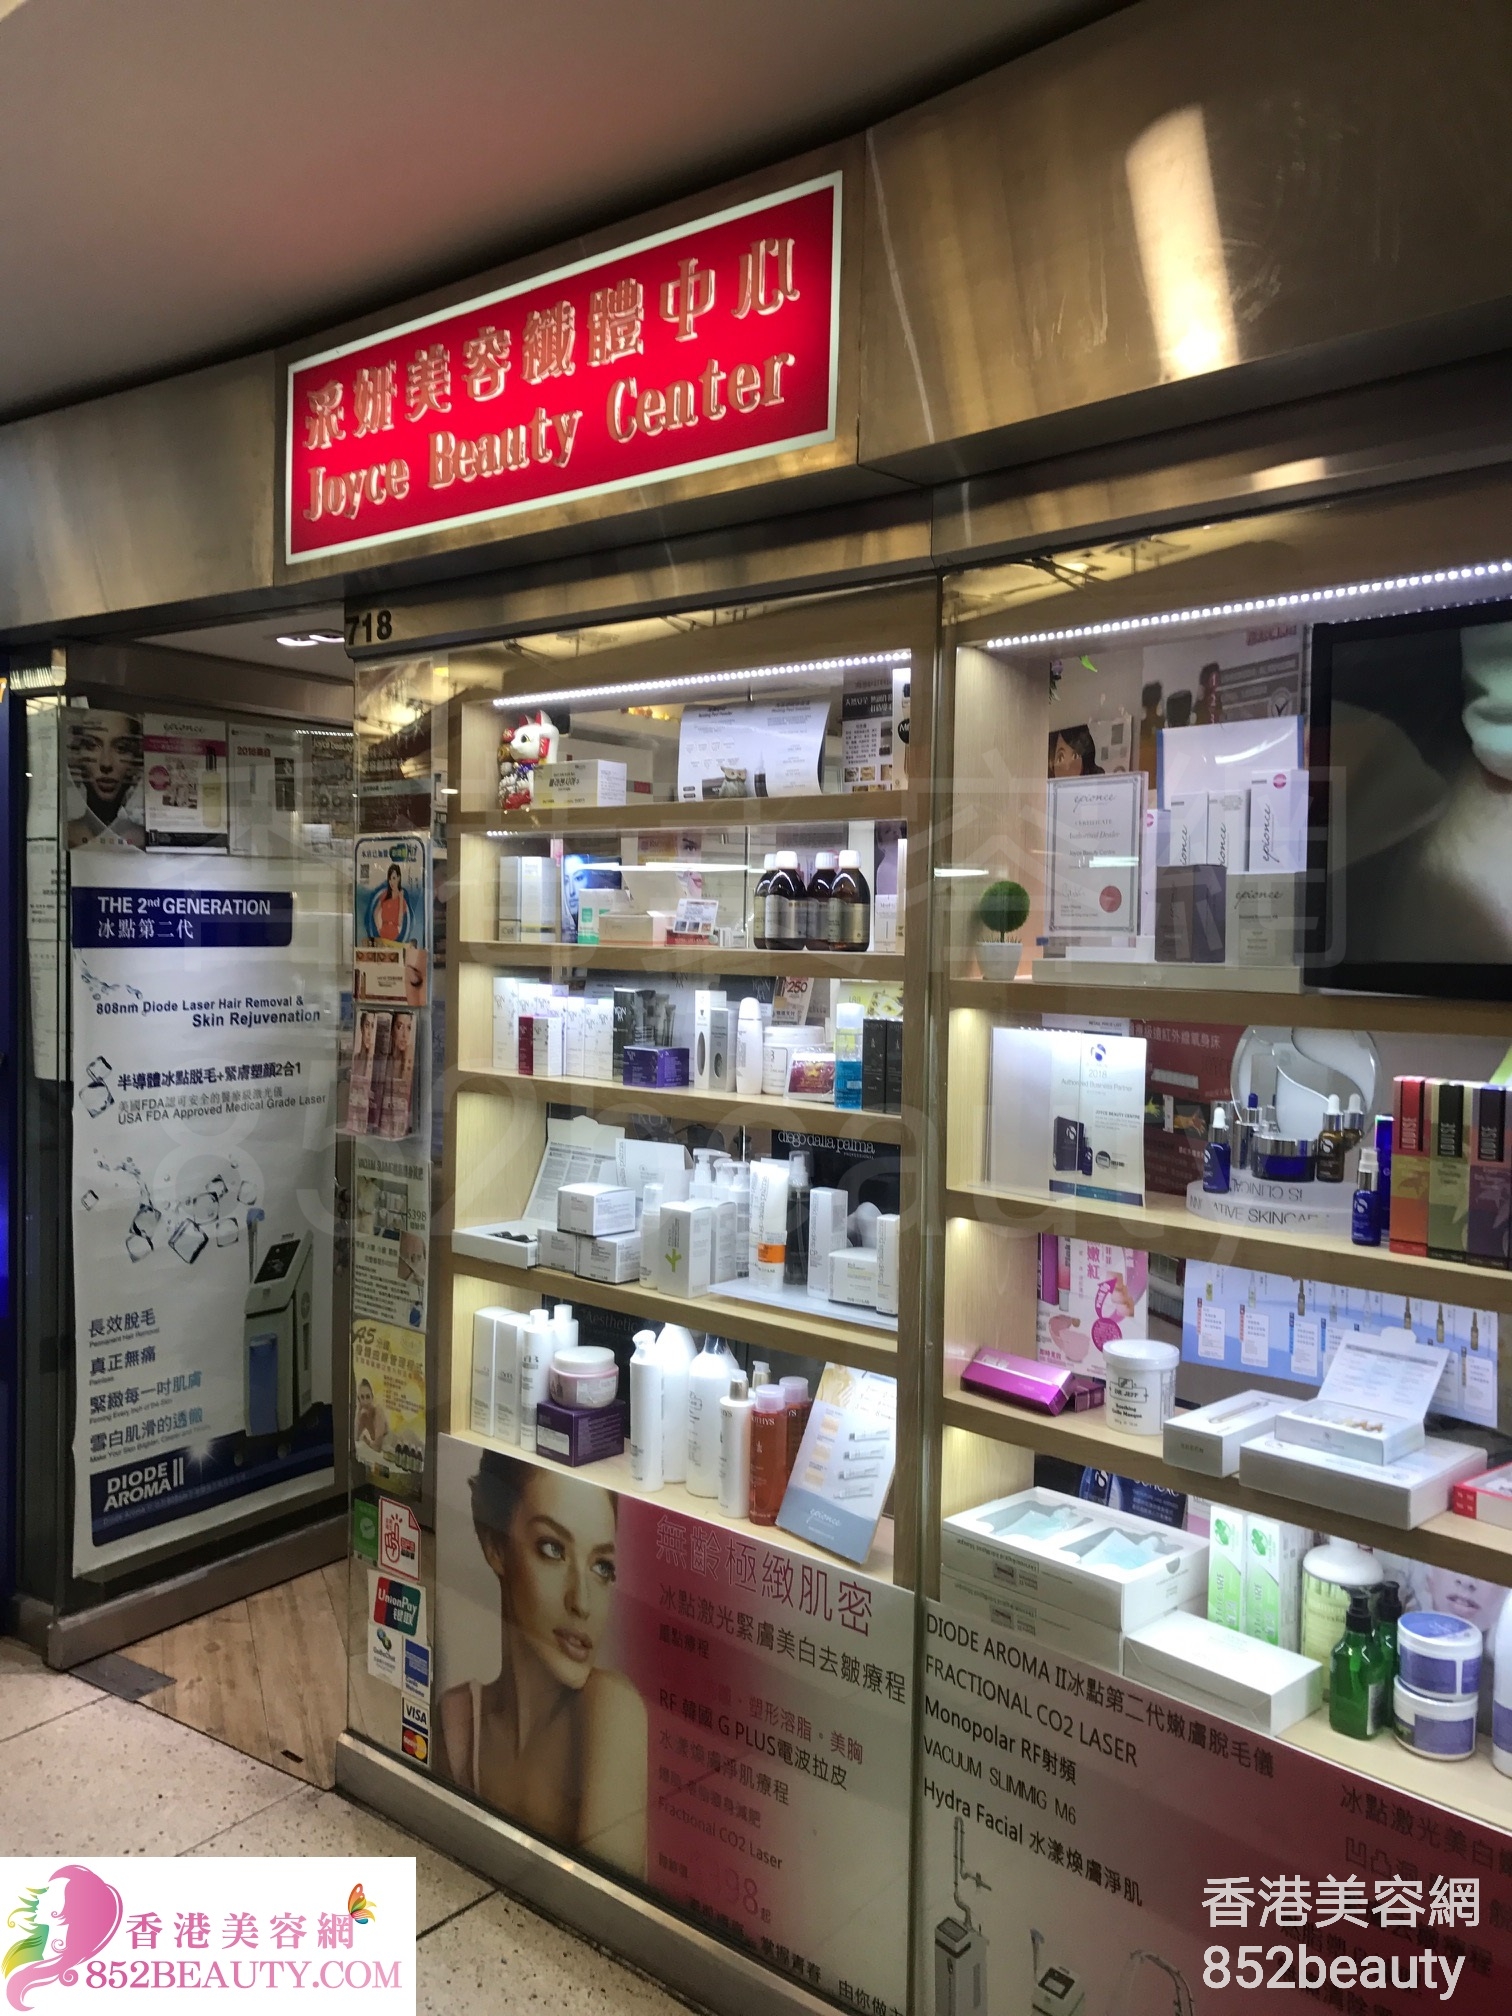 醫學美容: 采妍美容纖體中心 Joyce Beauty Center (西九龍中心)